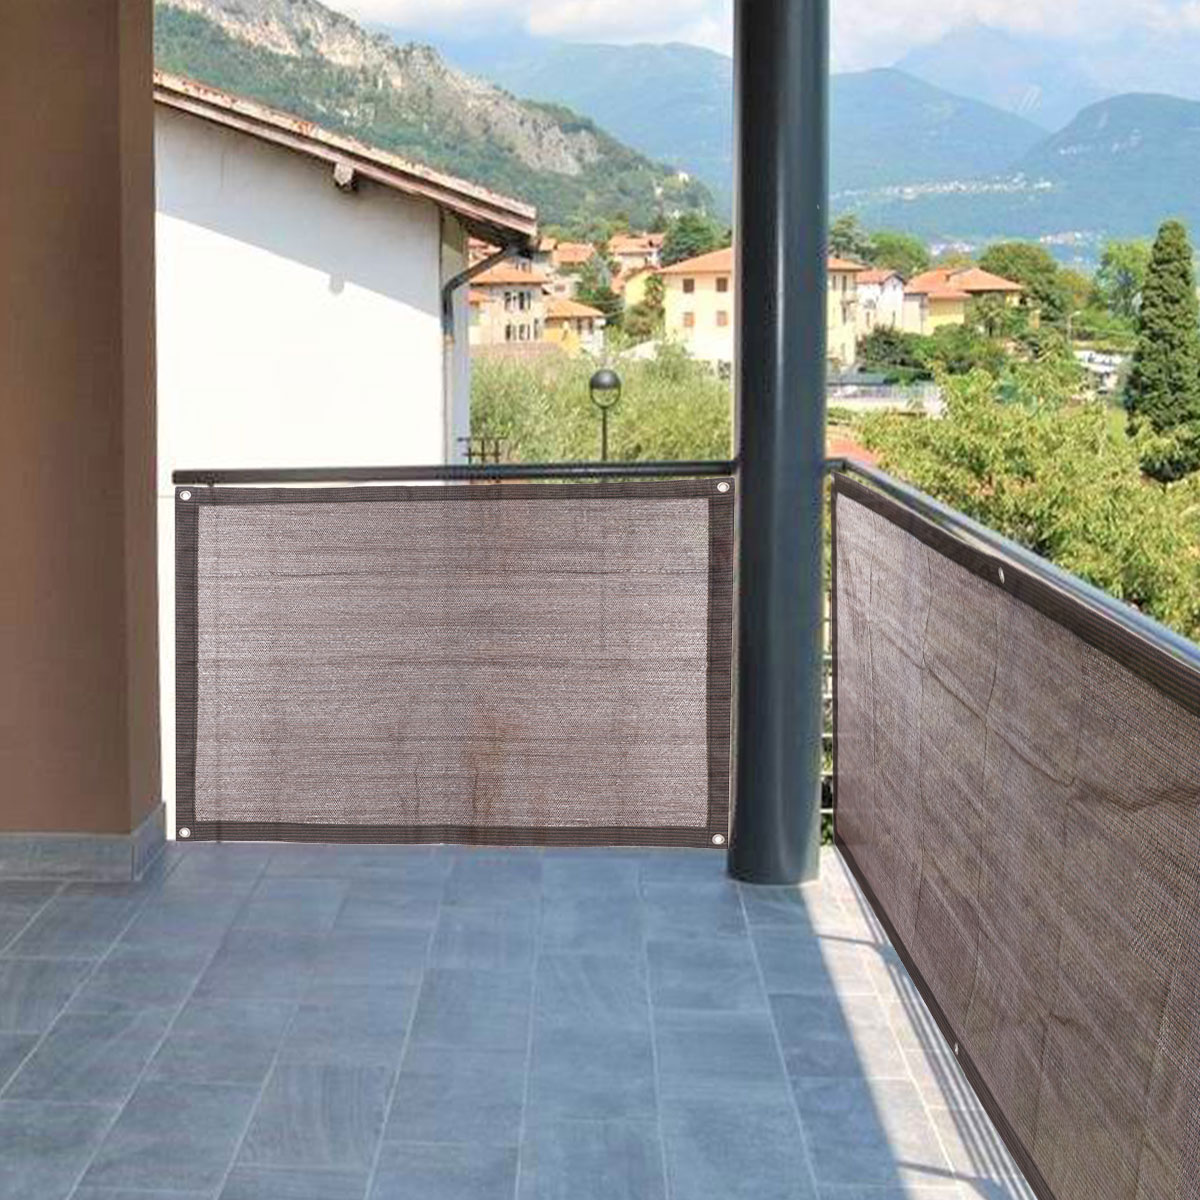 UV Block Protection Sun Shade Cloth Durable Portable Privacy Screen Fence for Balcony Backyard Garden